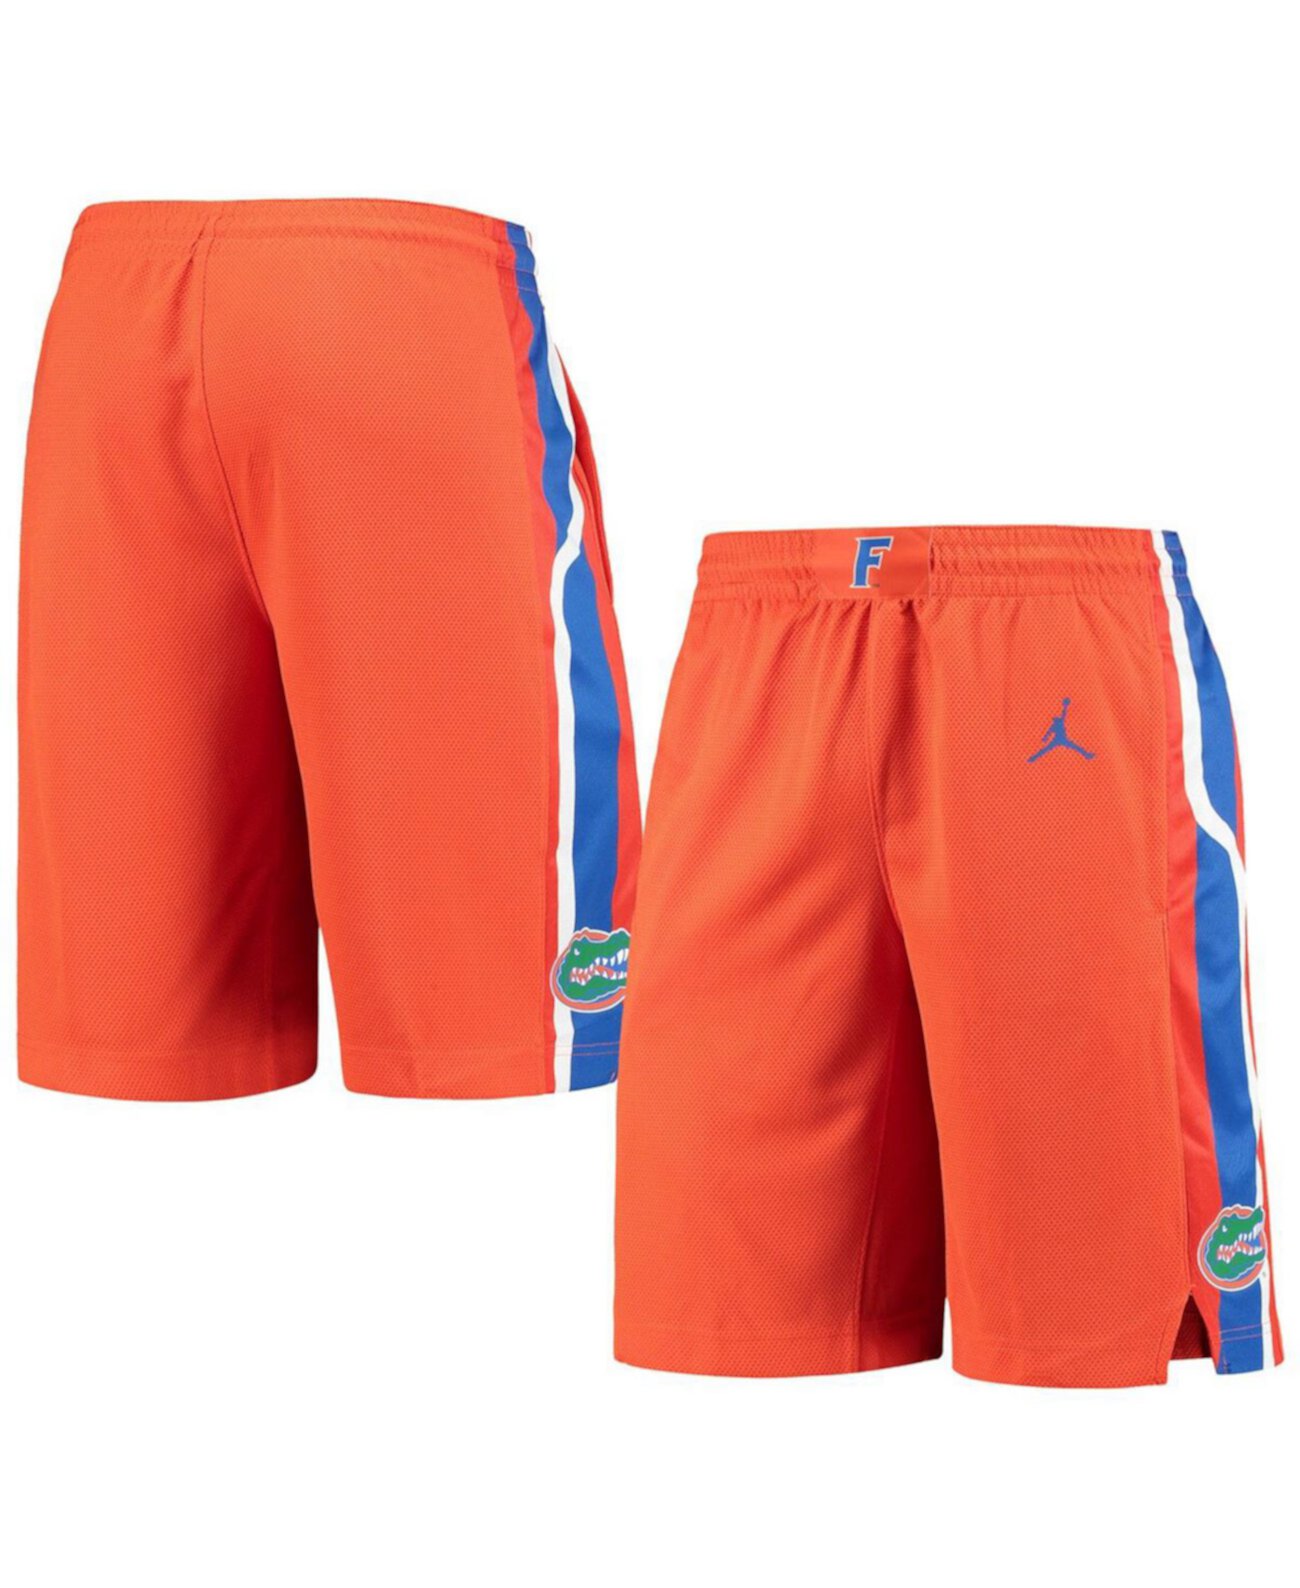 Мужские оранжевые баскетбольные шорты Florida Gators Replica Performance Jordan